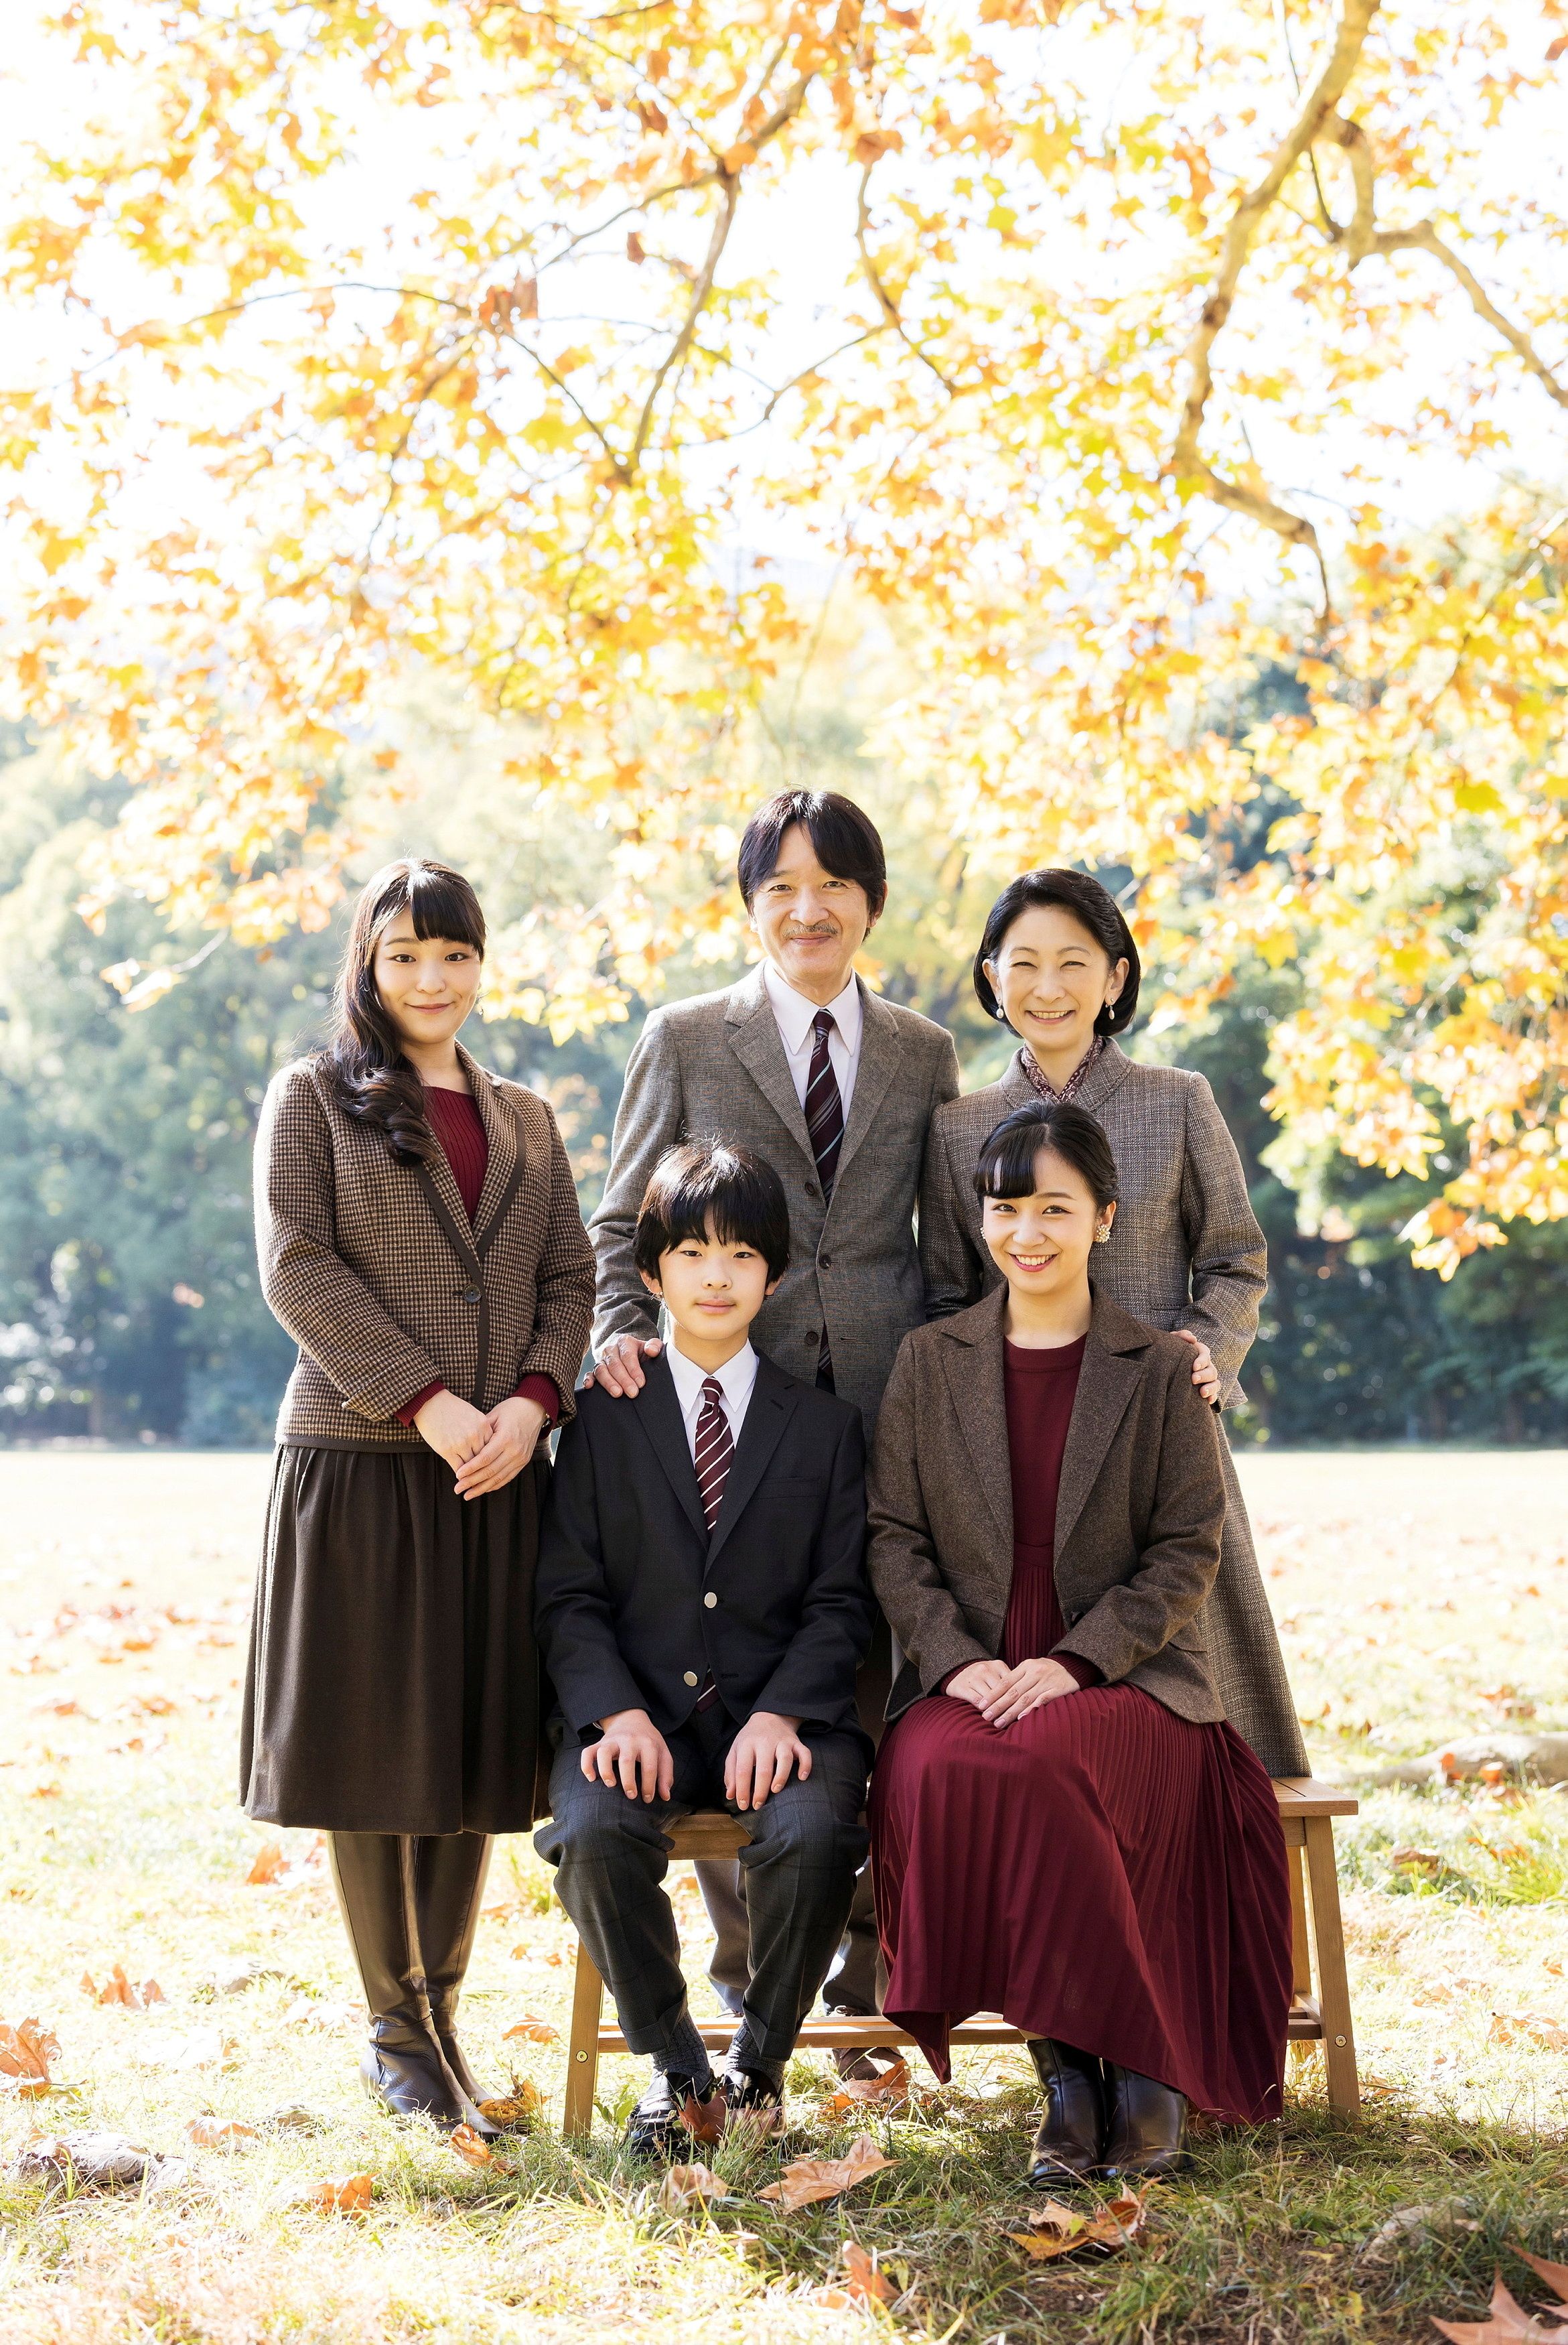 El príncipe Fumihito de Japón, hermano menor del emperador Naruhito y actual heredero del trono, con su esposa Kiko y sus tres hijos: la princesa Mako, la princesa Kako y el príncipe Hisahito (Foto: Reuters)